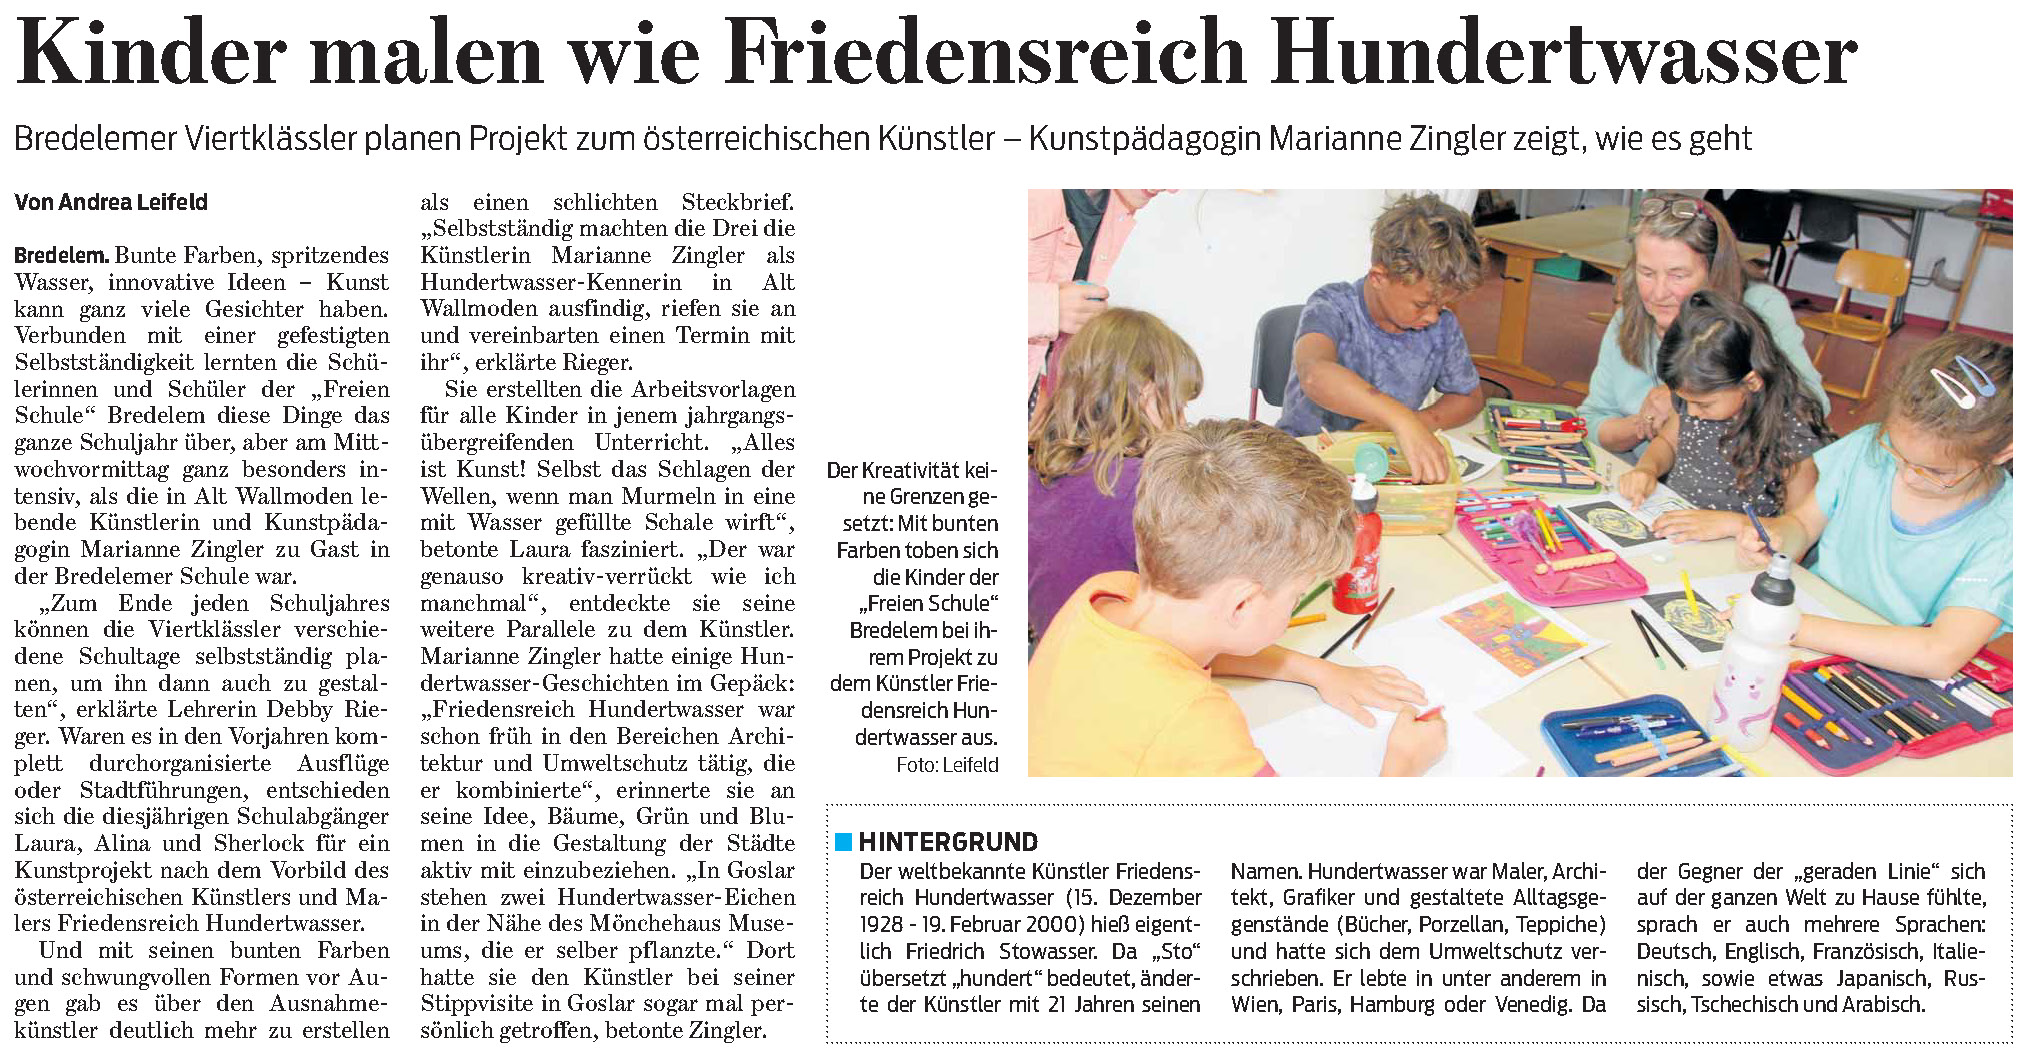 Juli 2021 - Kinder malen wie Friedensreich Hundertwasser - GZ vom 10.07.2021